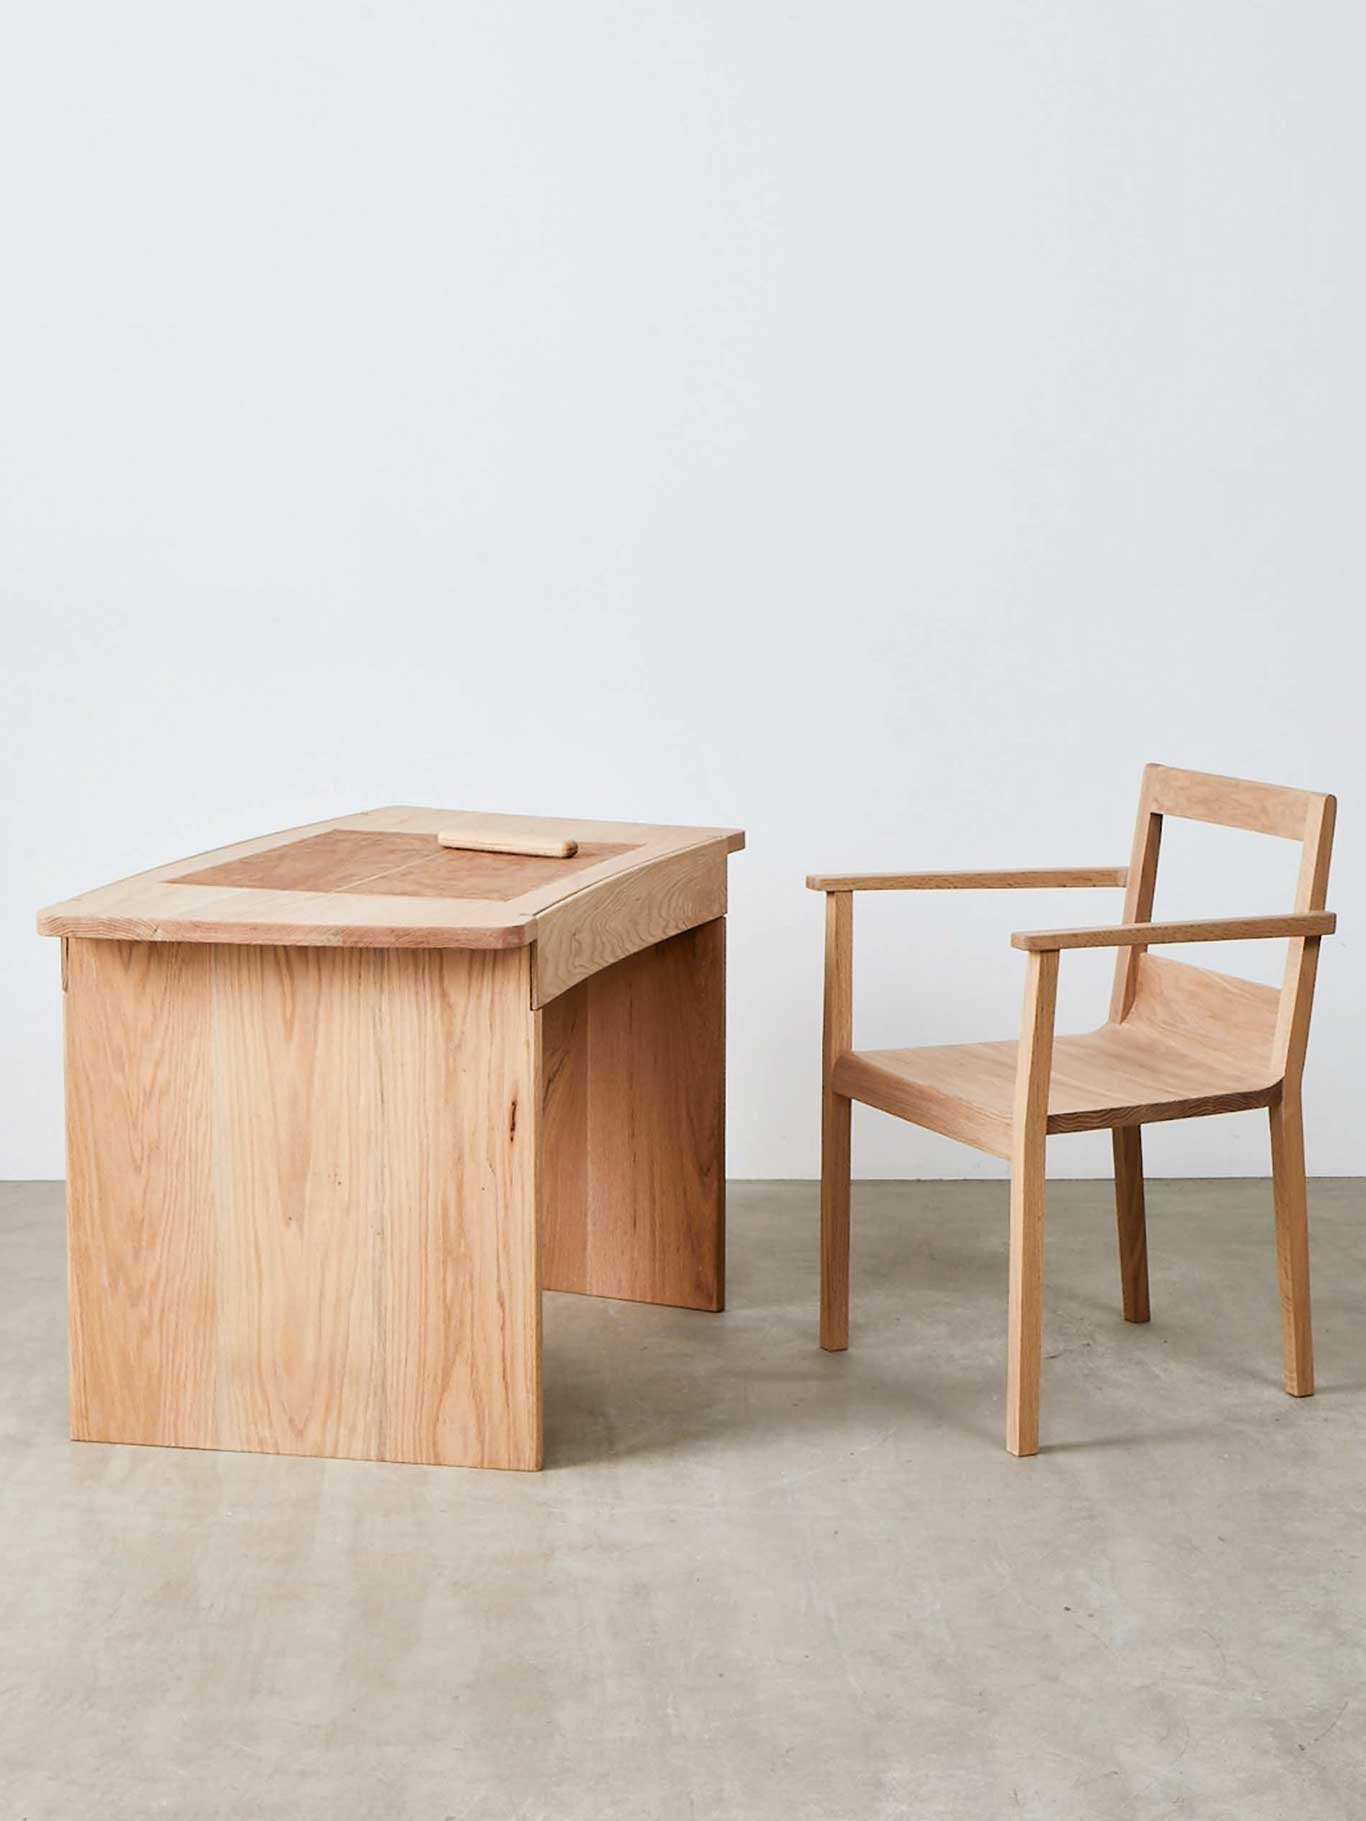 Die Möbelfirma Benchmark gab während des London Design Festivals diverse Designs aus amerikanischer Roteiche in Auftrag. Cox -kreierte daraus diesen aufklappbaren Schreibtisch. sebastiancox.co.uk